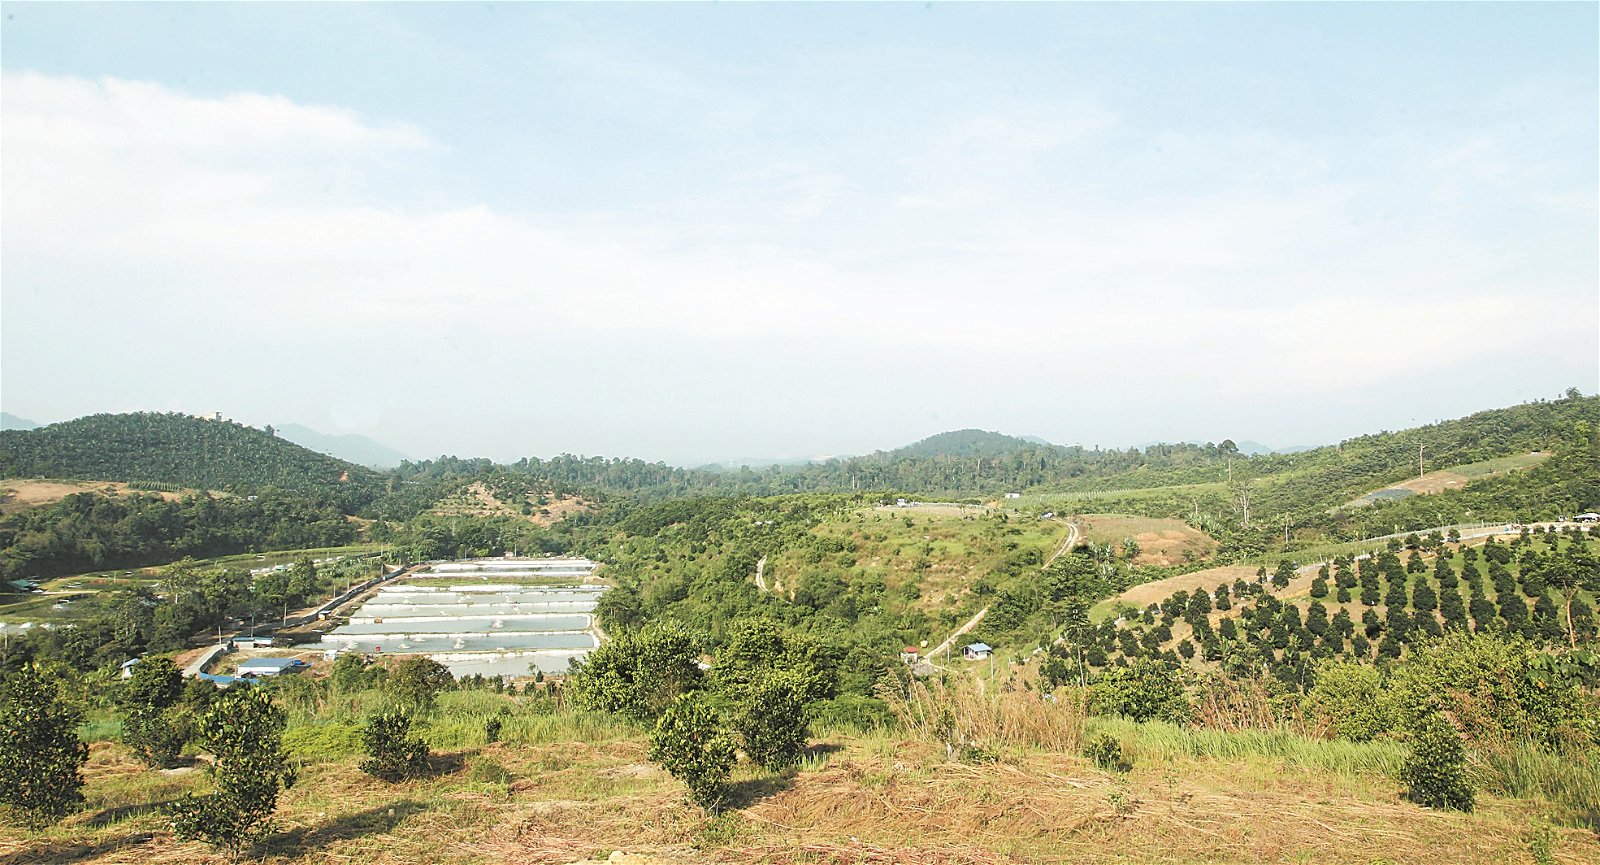 张义鸿的果园位于士毛月，属于农业部所拥有的“食物出产土地计划”一部分。